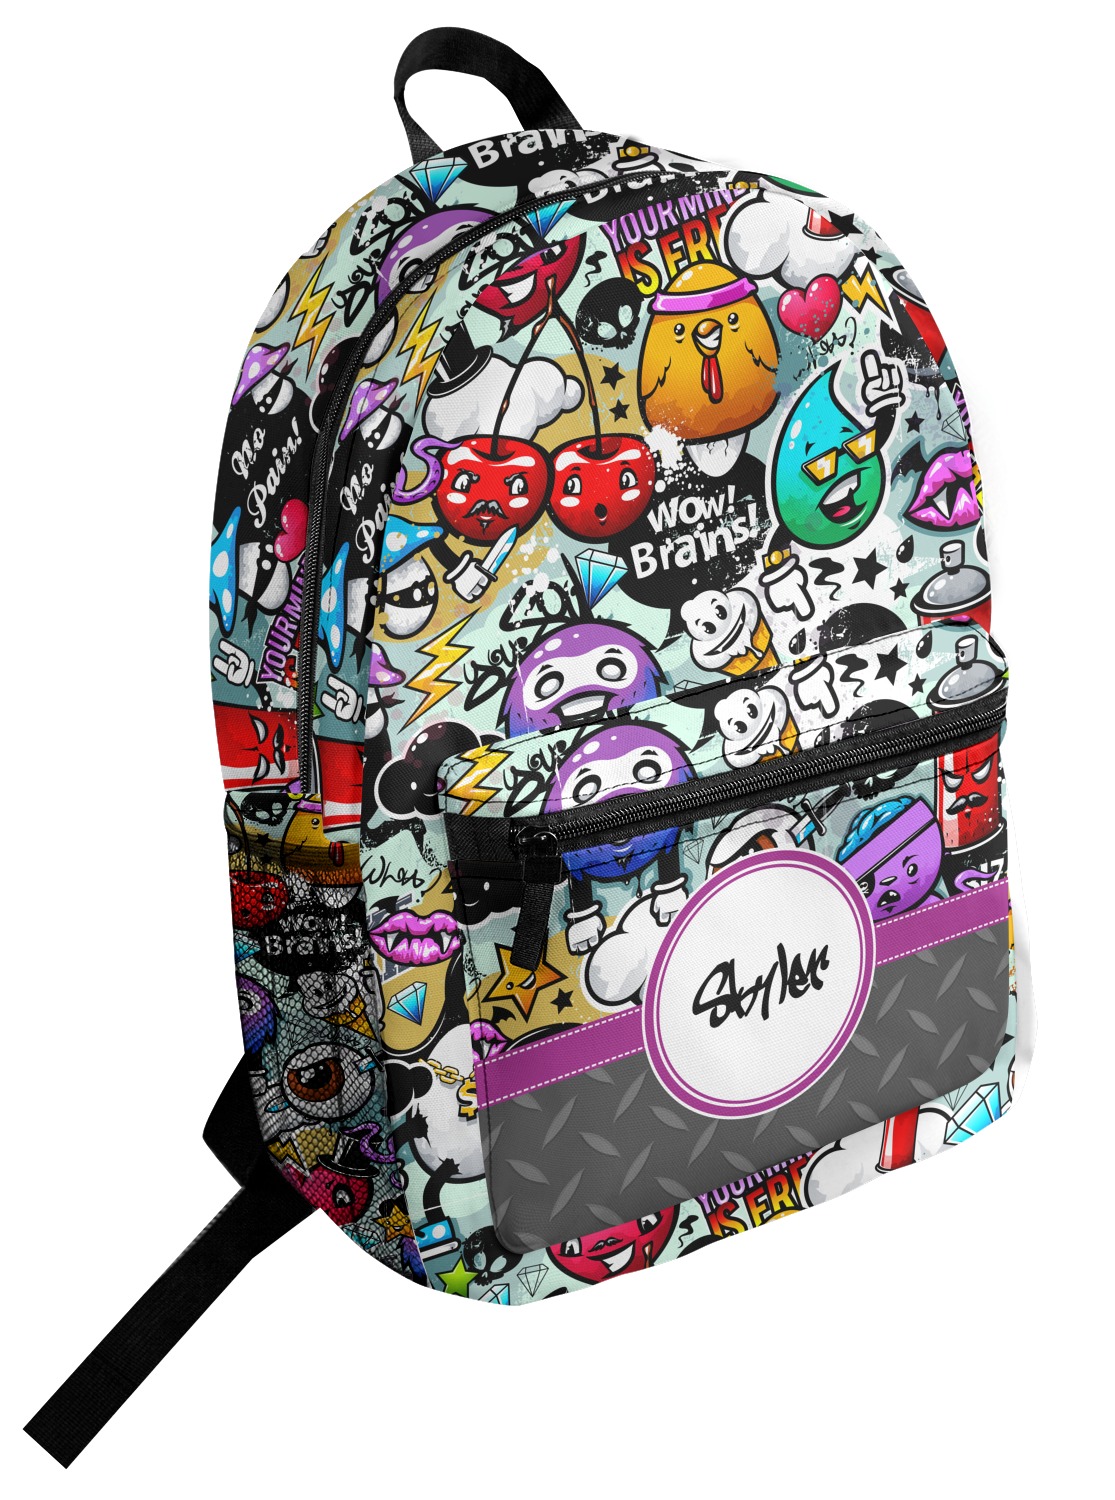 Graffiti Design Custom Student Backpack